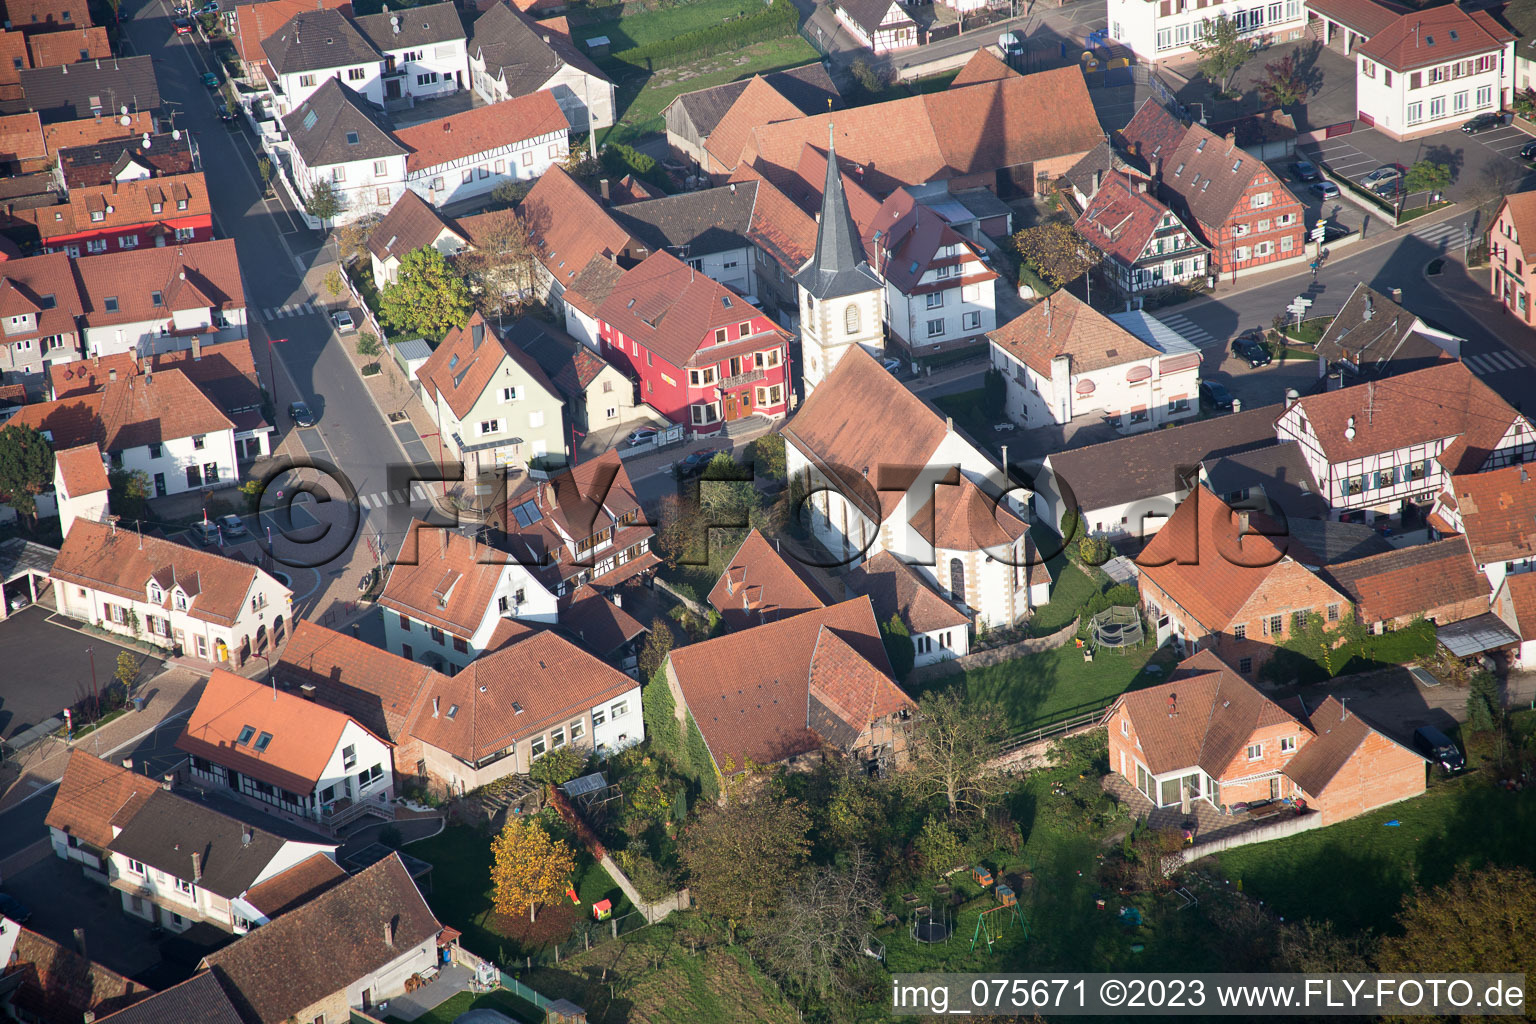 Niederrœdern dans le département Bas Rhin, France vu d'un drone